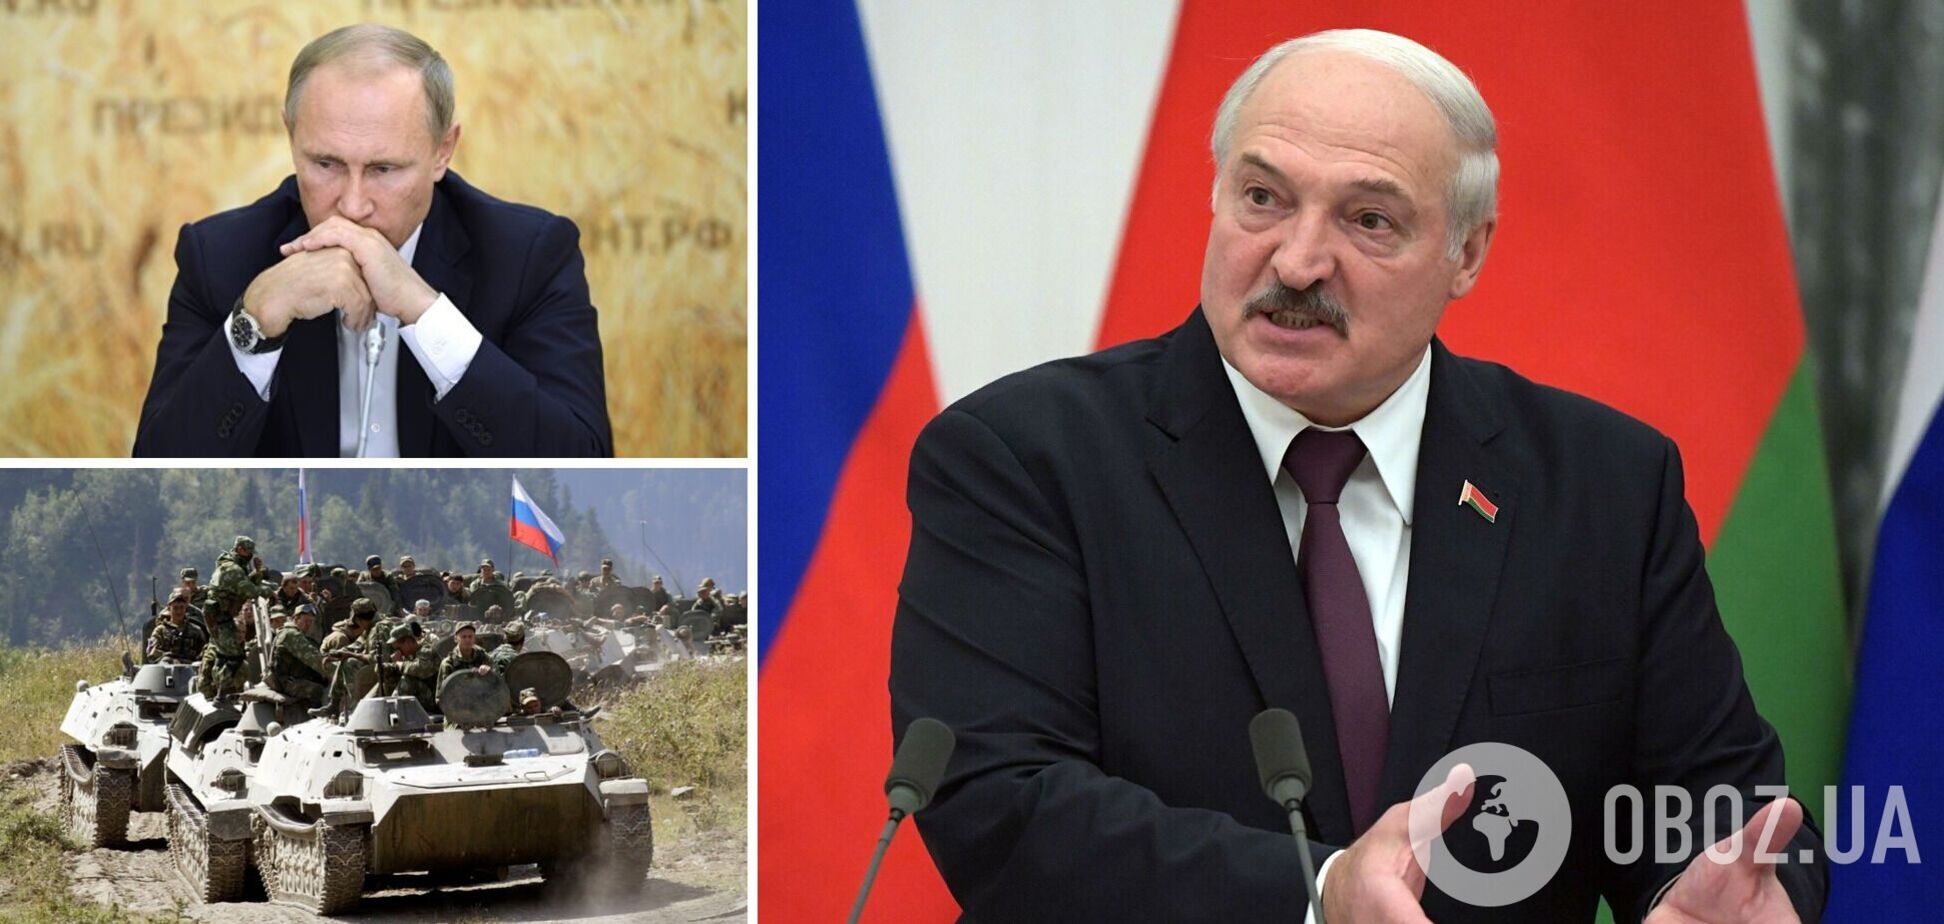 'Лукашенко почуял, что пахнет жаренным': Тышкевич указал на показательные изменения в Беларуси